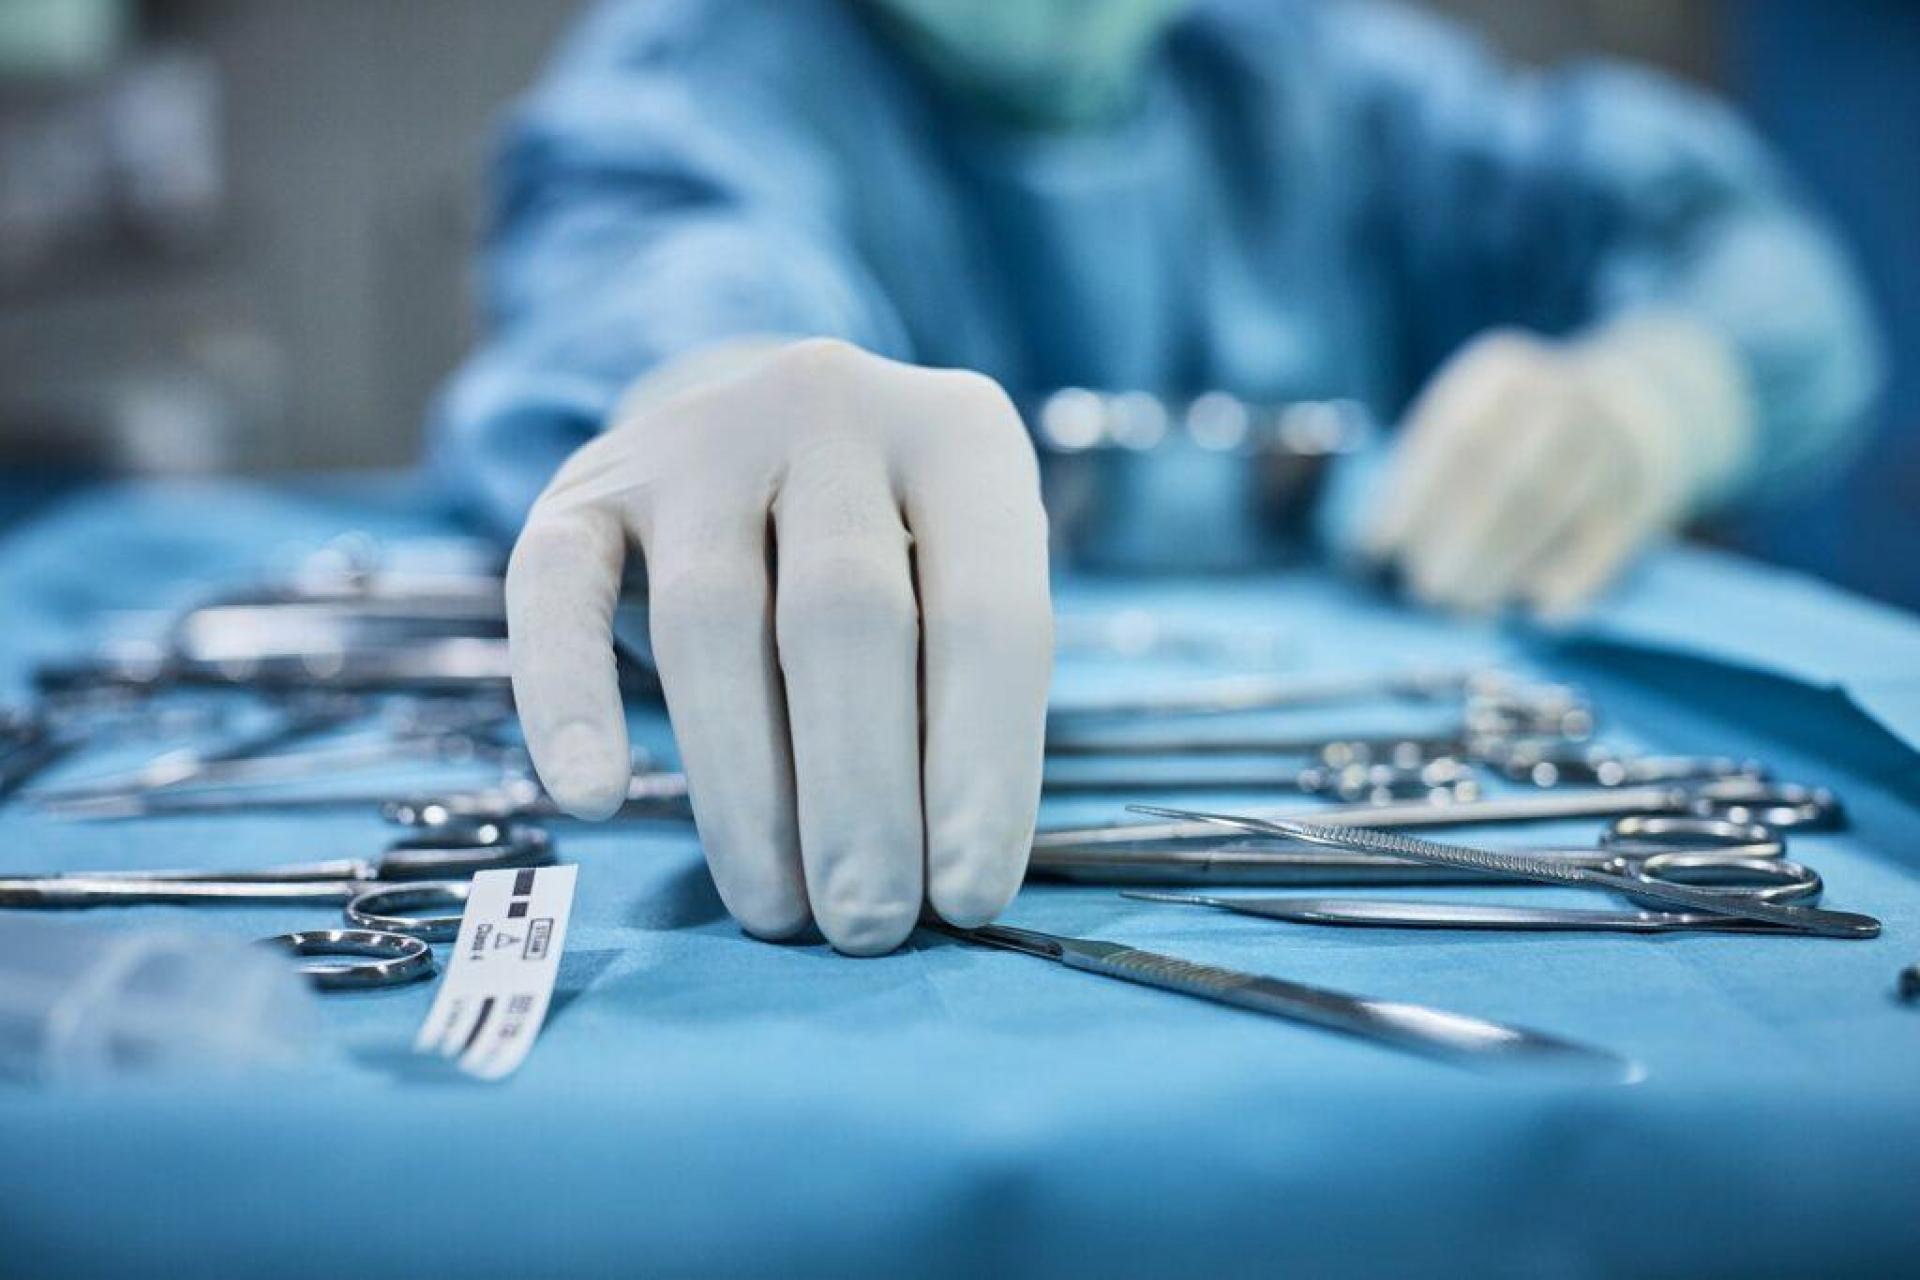 Especialização em Instrumentação Cirúrgica: sua chance de se destacar no mercado de trabalho da saúde